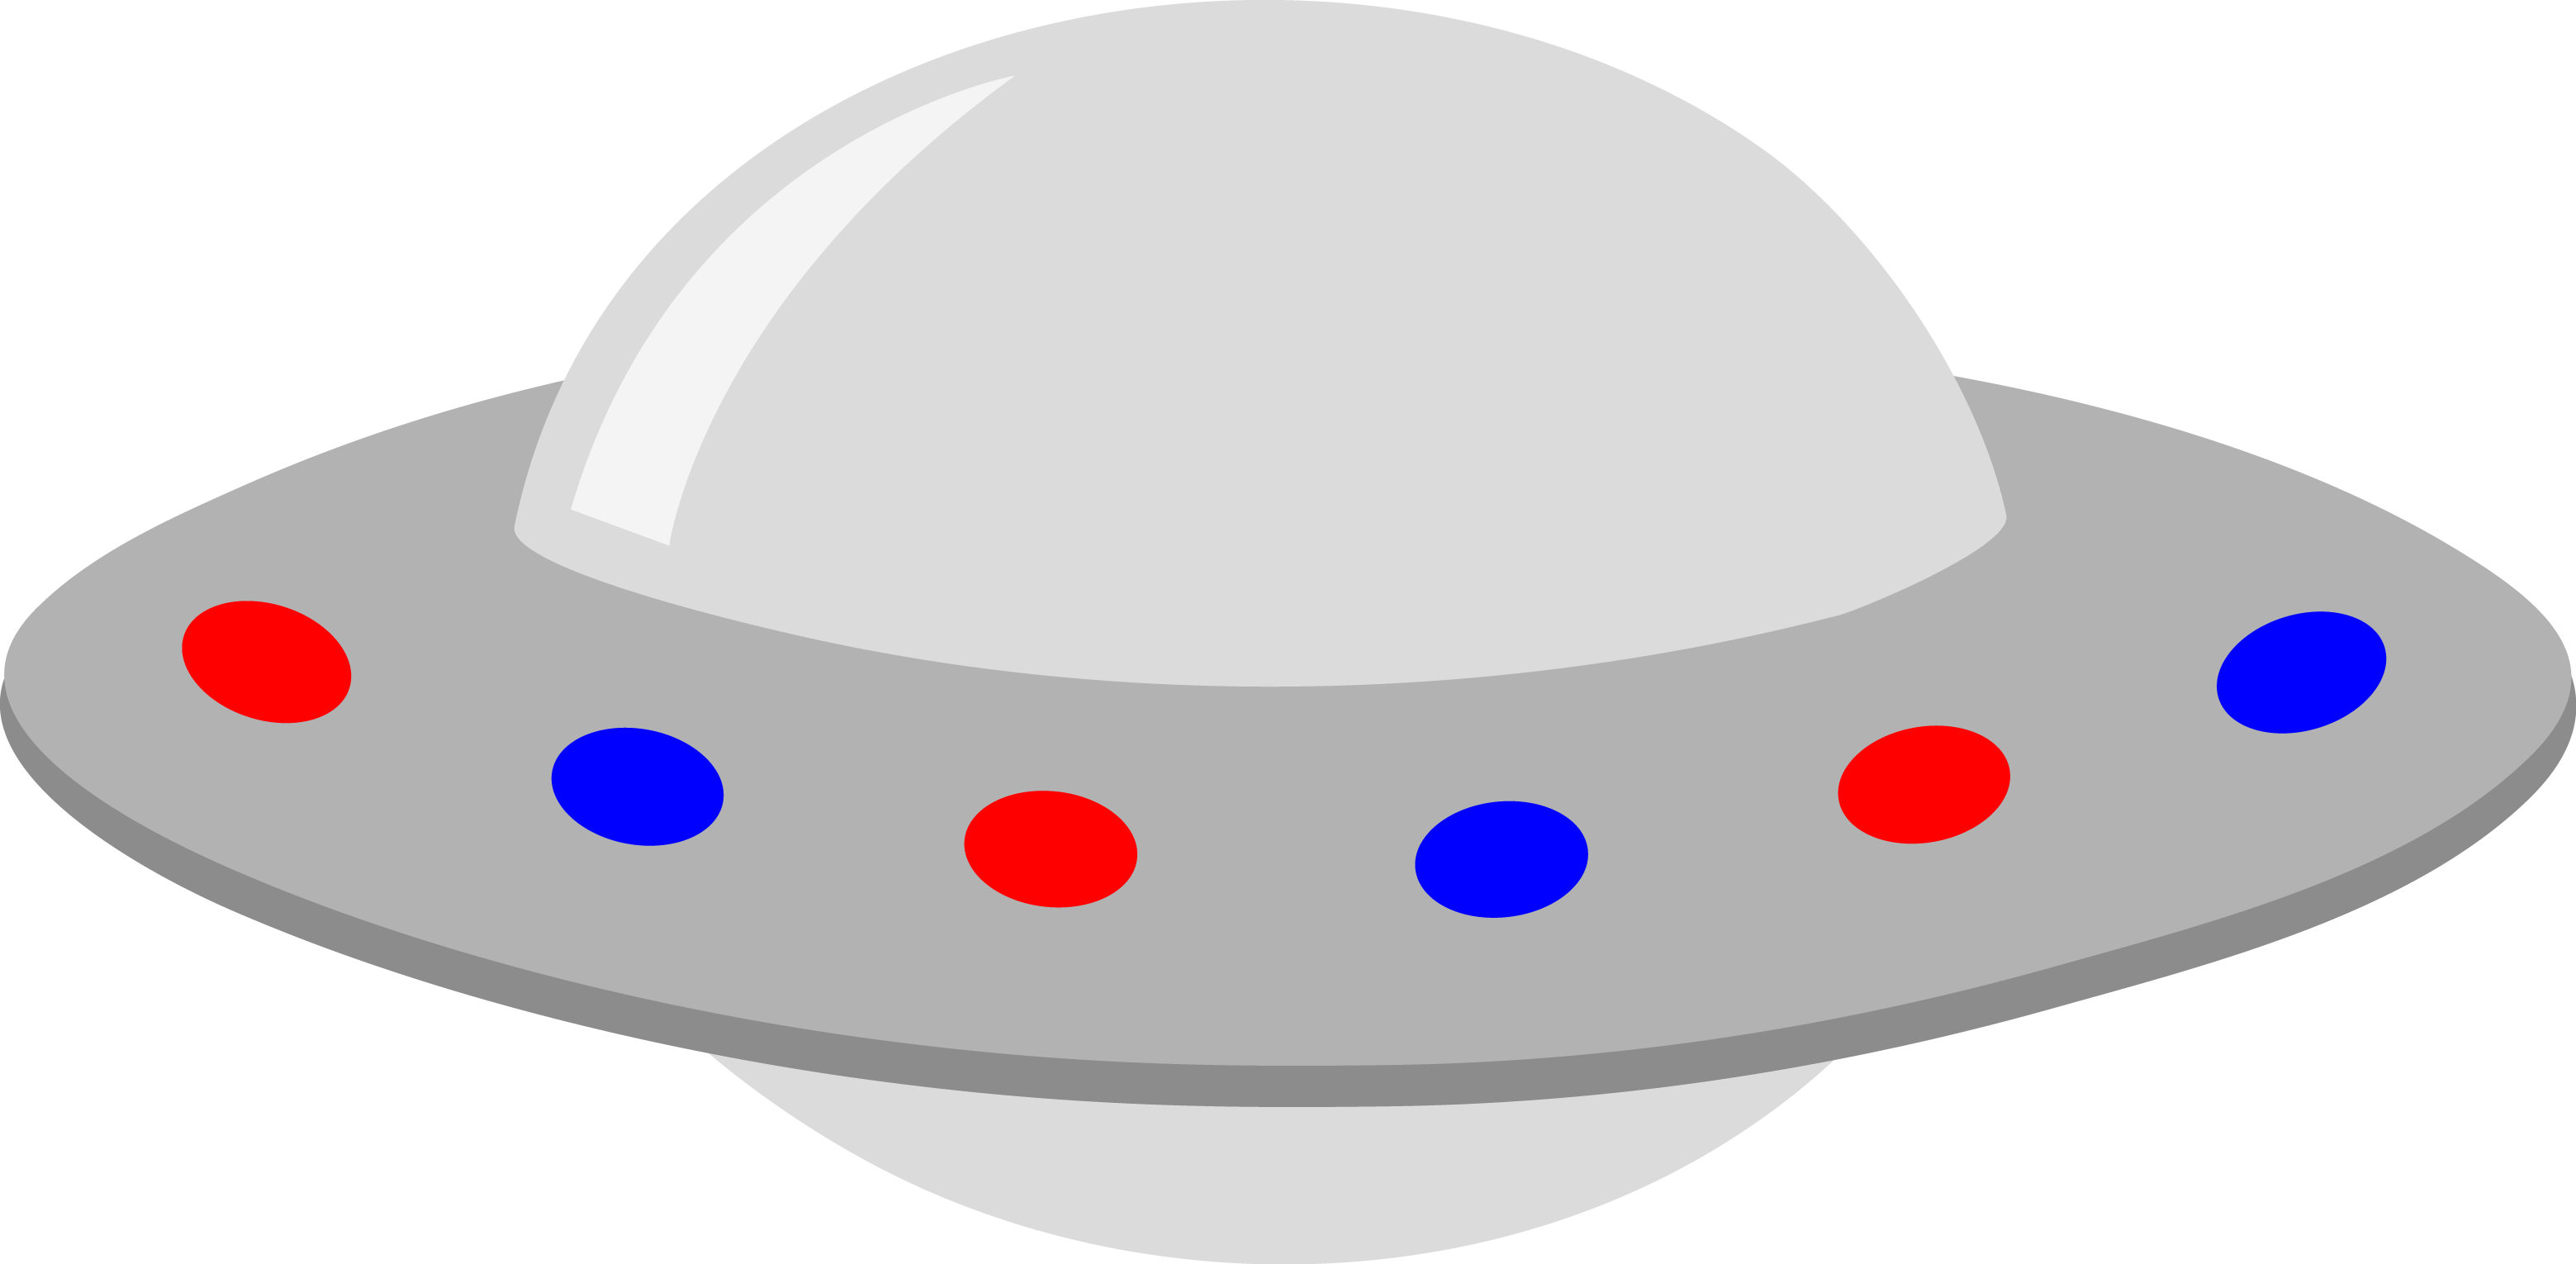 Ufo Clipart - Tumundografico